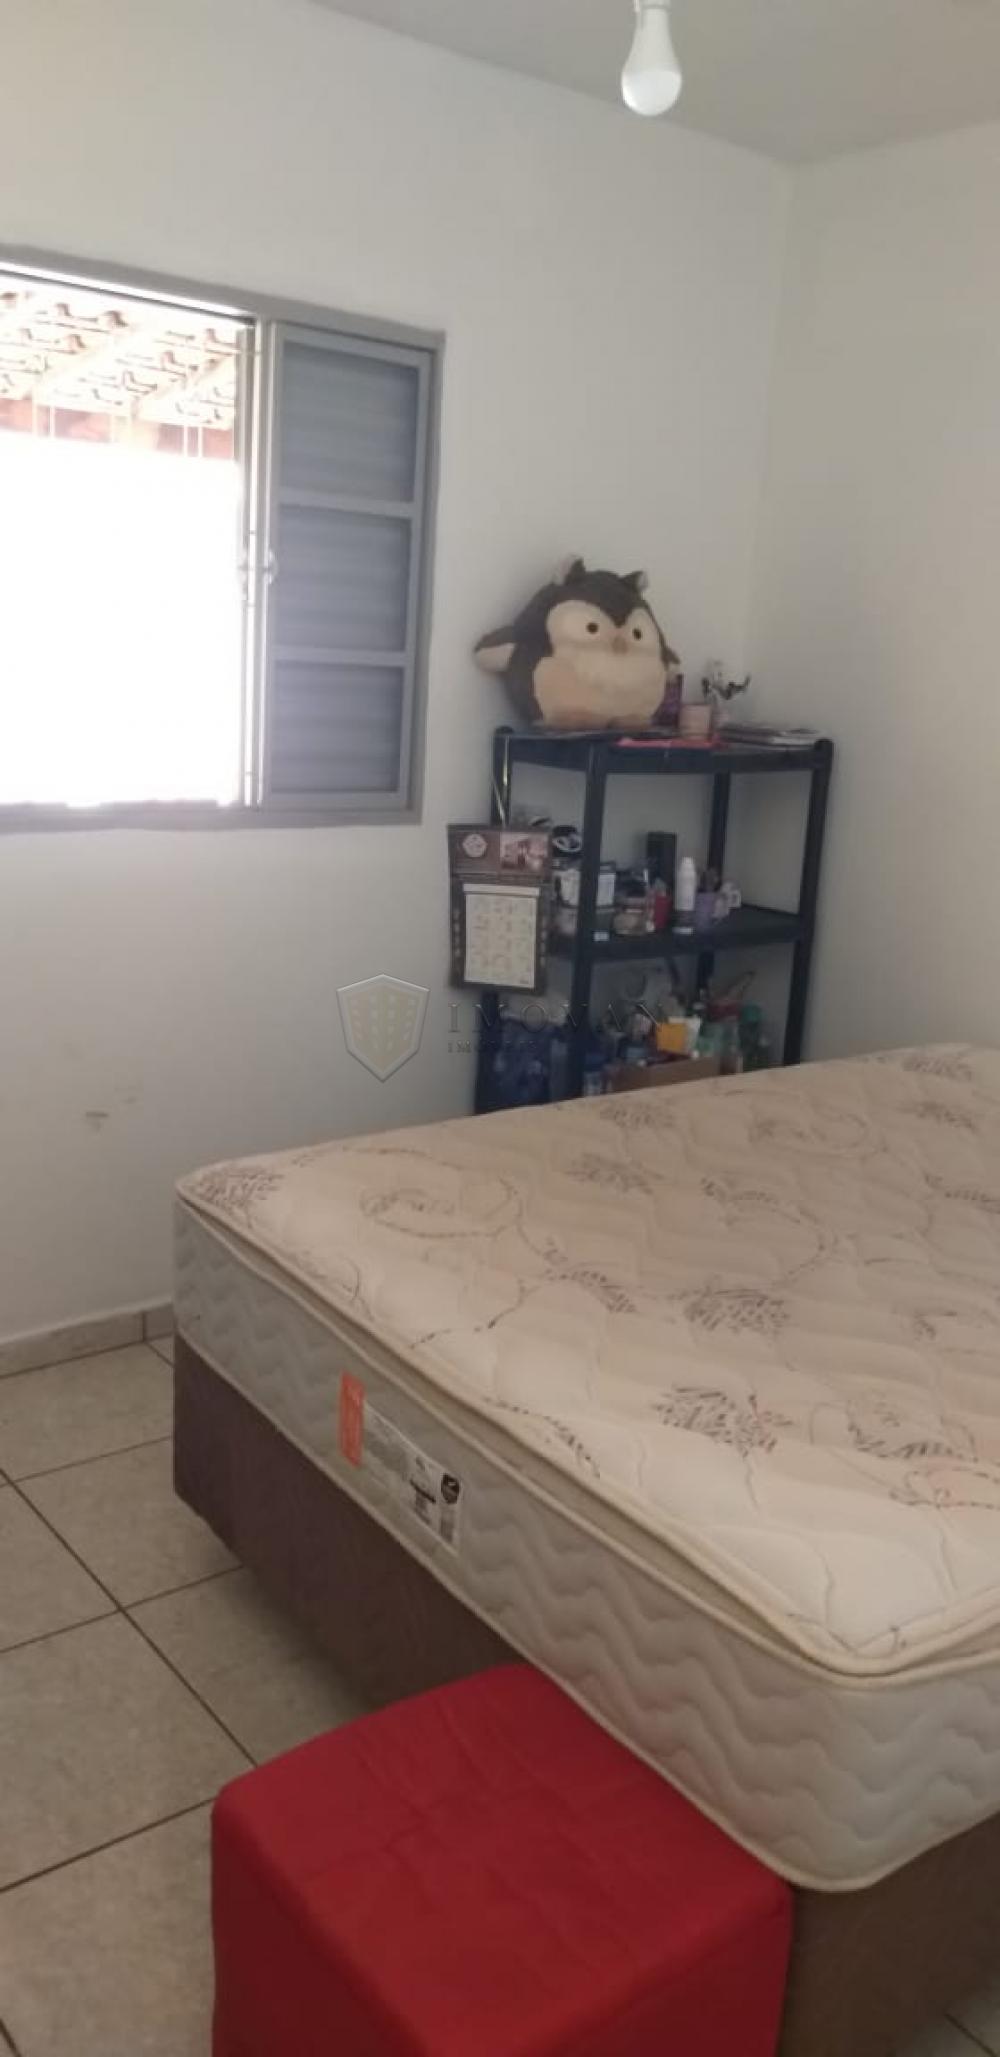 Comprar Casa / Padrão em Ribeirão Preto R$ 220.000,00 - Foto 10